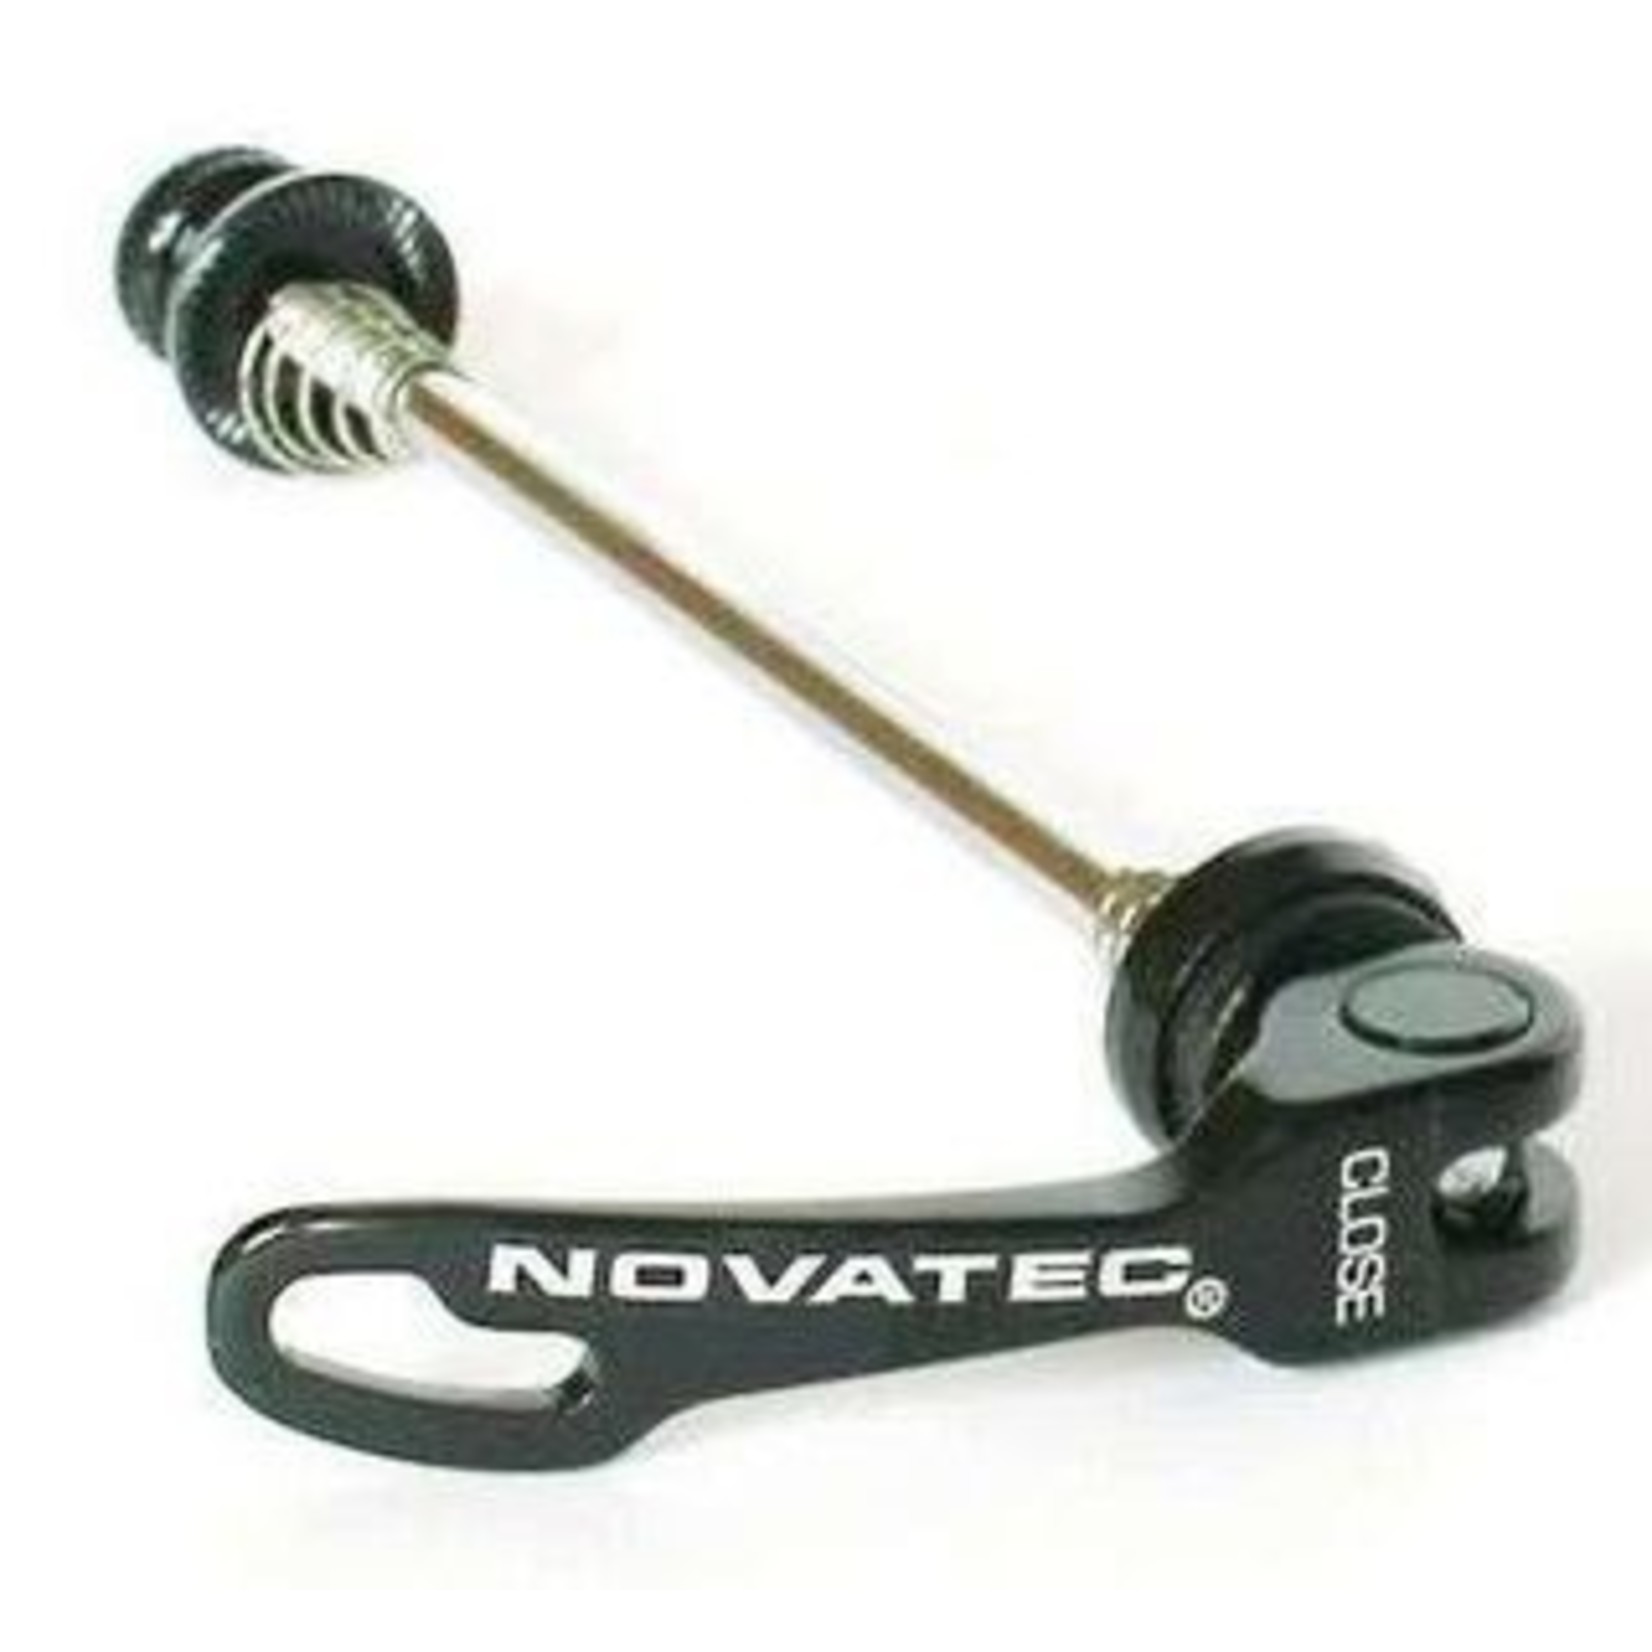 Novatec Novatec - Skewer - Front - Cro Mo Shaft - Nylon Bushings - 7005 Alloy Levers & Ends 40G